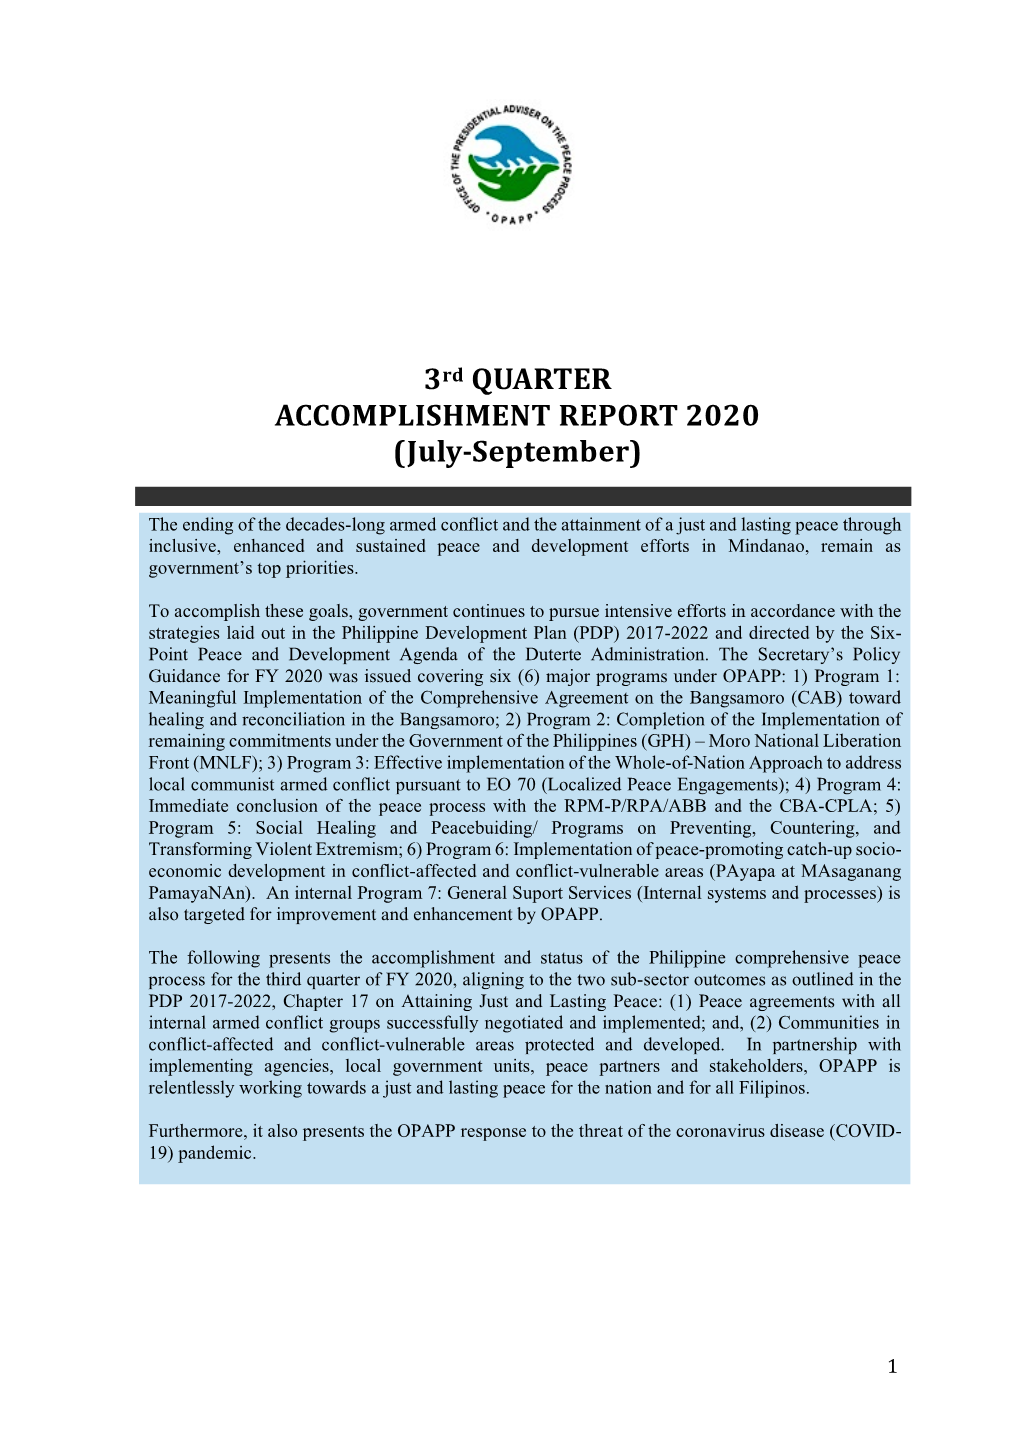 OPAPP 3Rd Quarter Accomplishment Report 2020